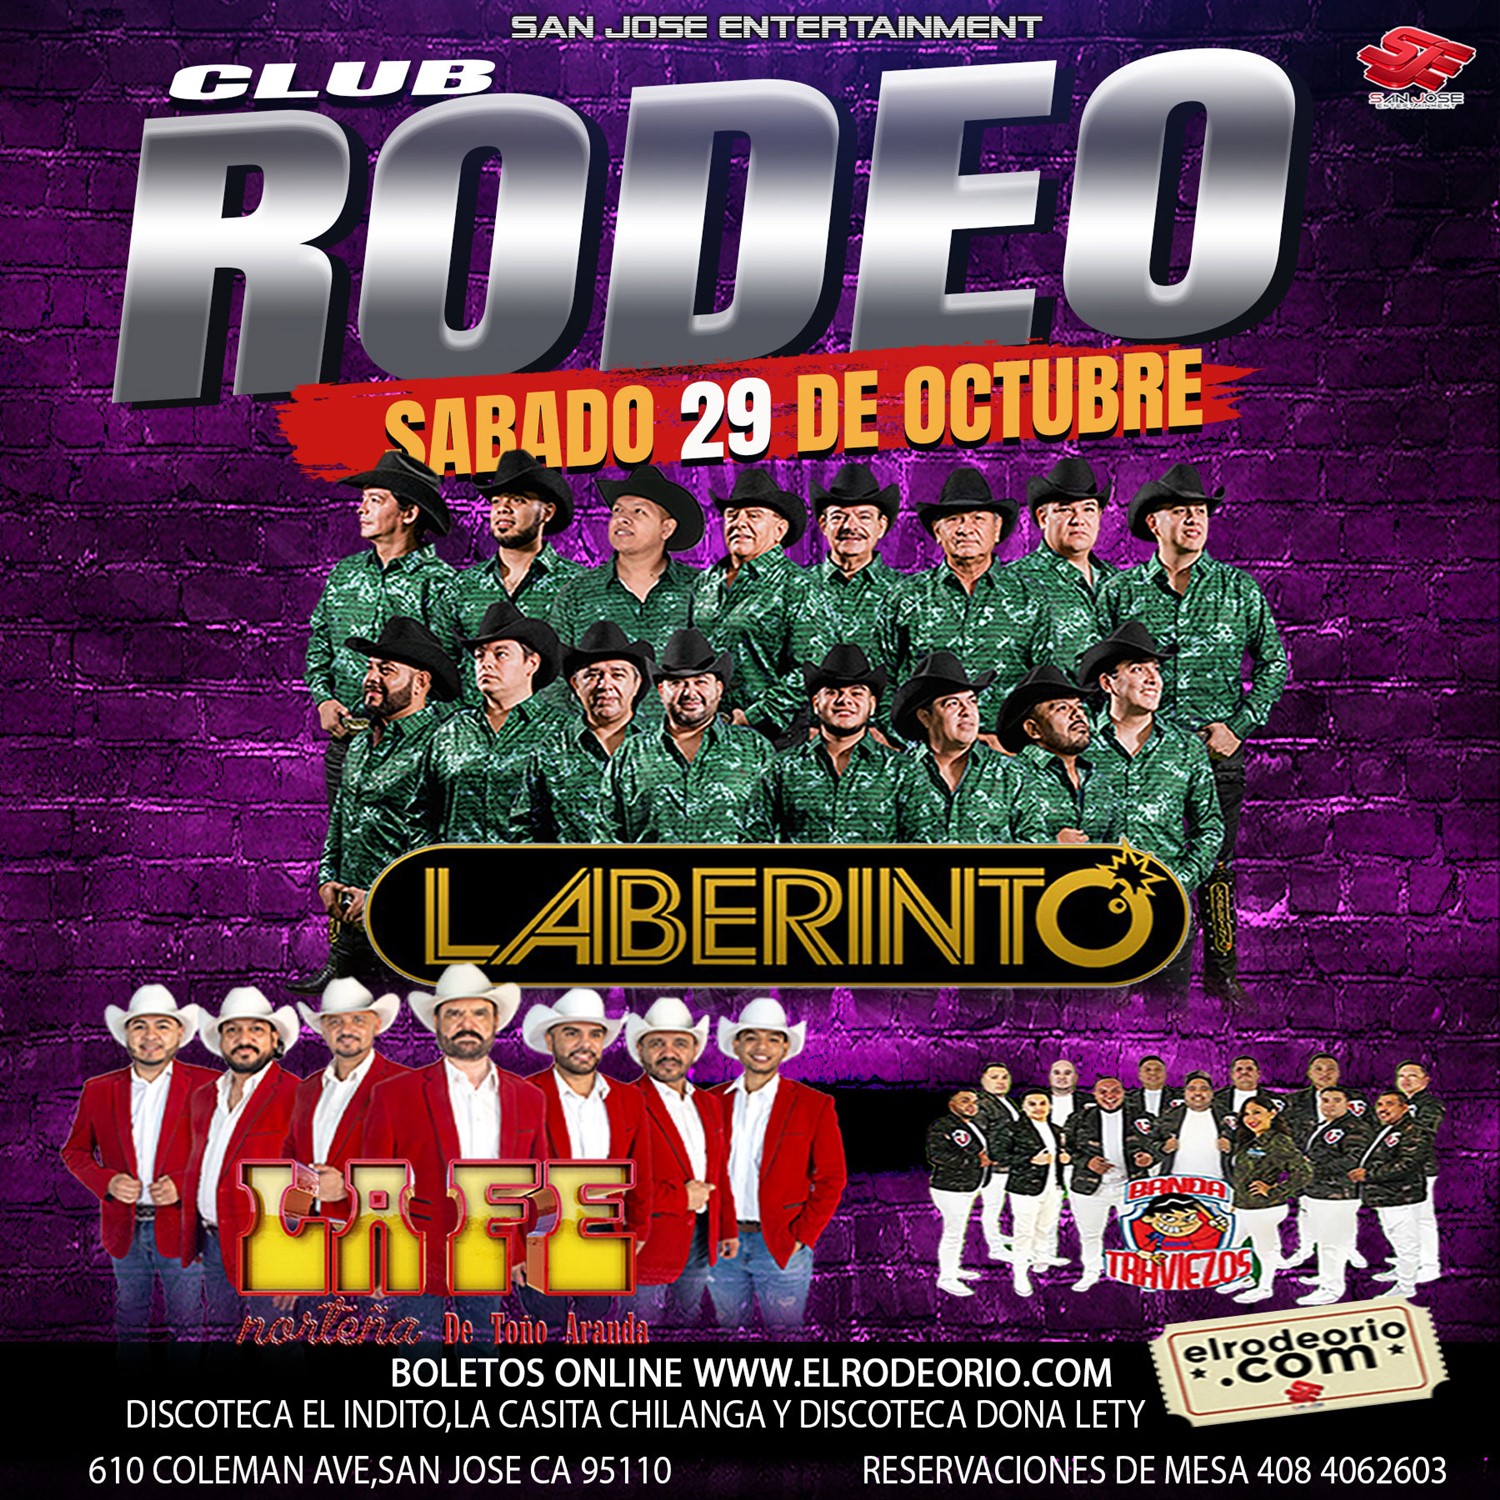 Grupo Laberinto,La Fe Norteña,Club Rodeo de San Jose  on oct. 29, 21:00@Club Rodeo - Compra entradas y obtén información enelrodeorio.com sanjoseentertainment